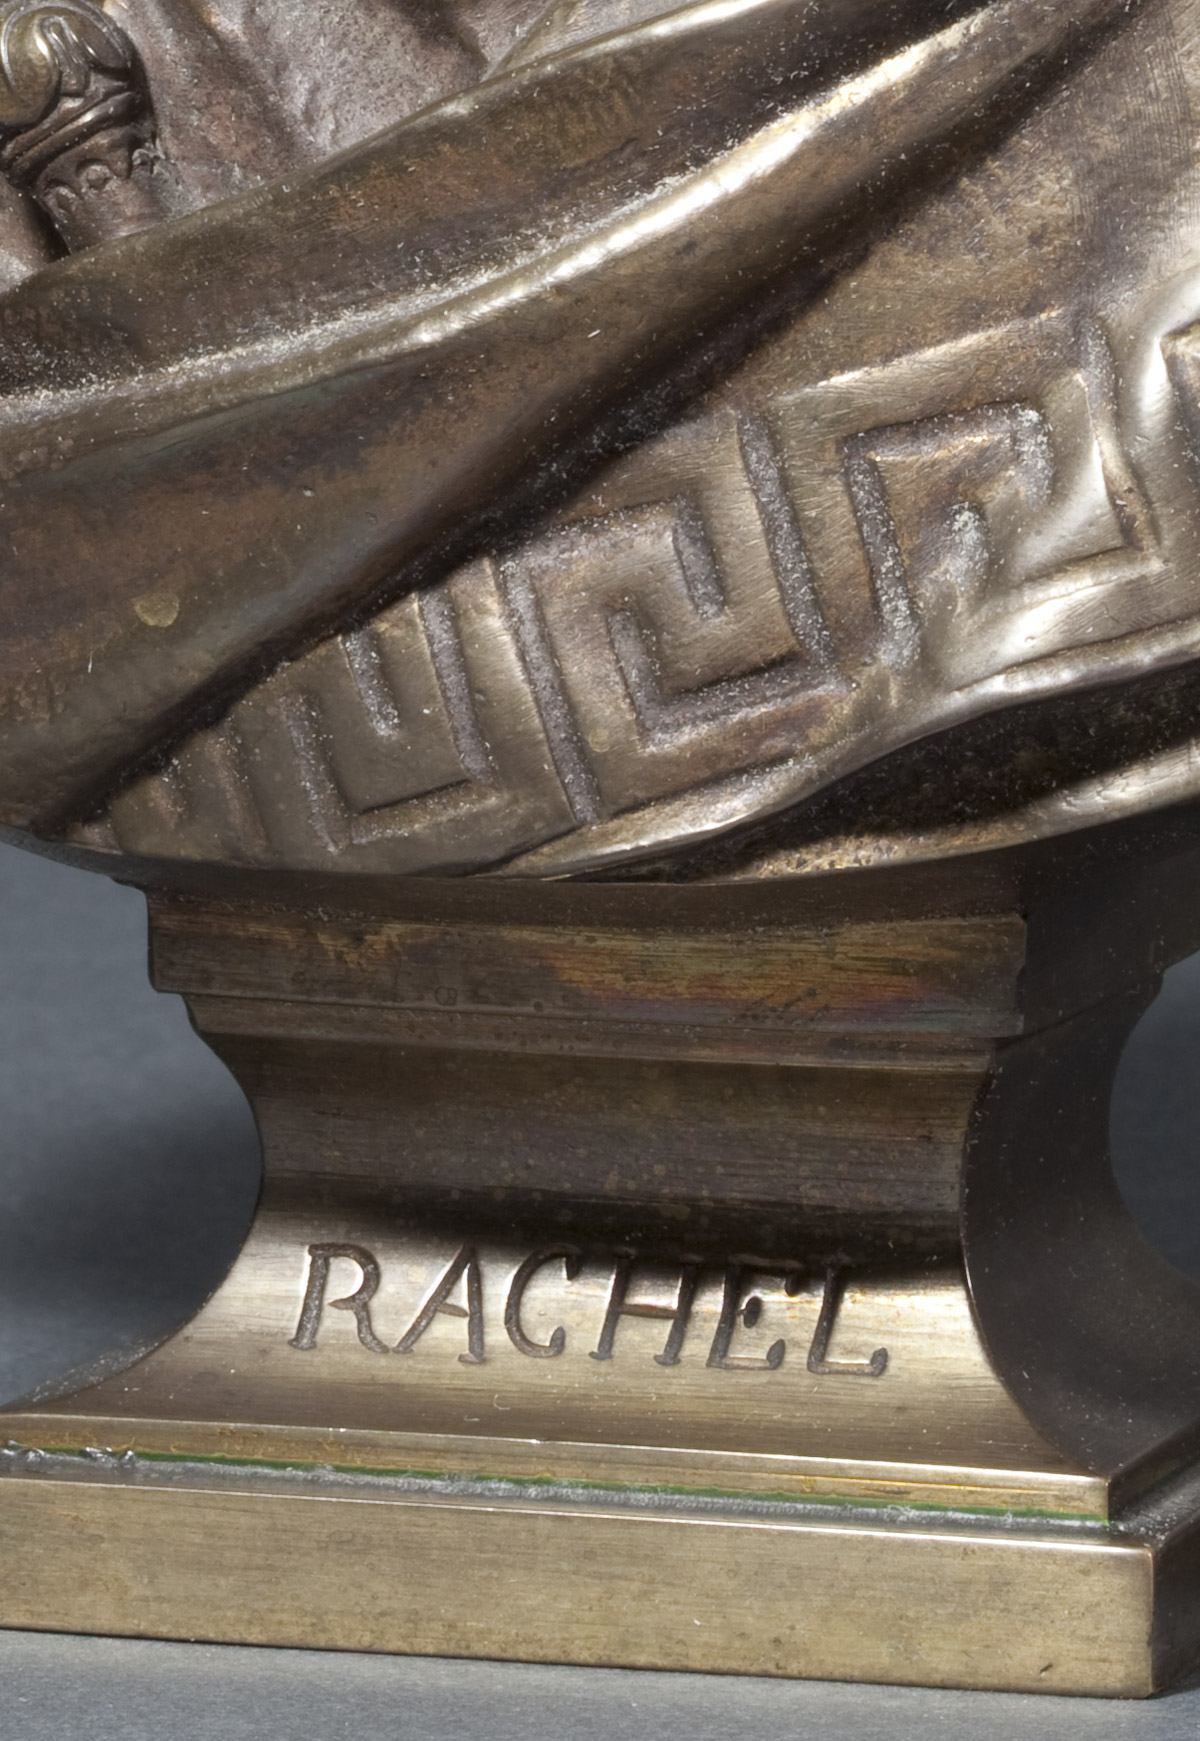 Buste en bronze de Rachel - Patrimoine Charles-André COLONNA WALEWSKI, en ligne directe de Napoléon